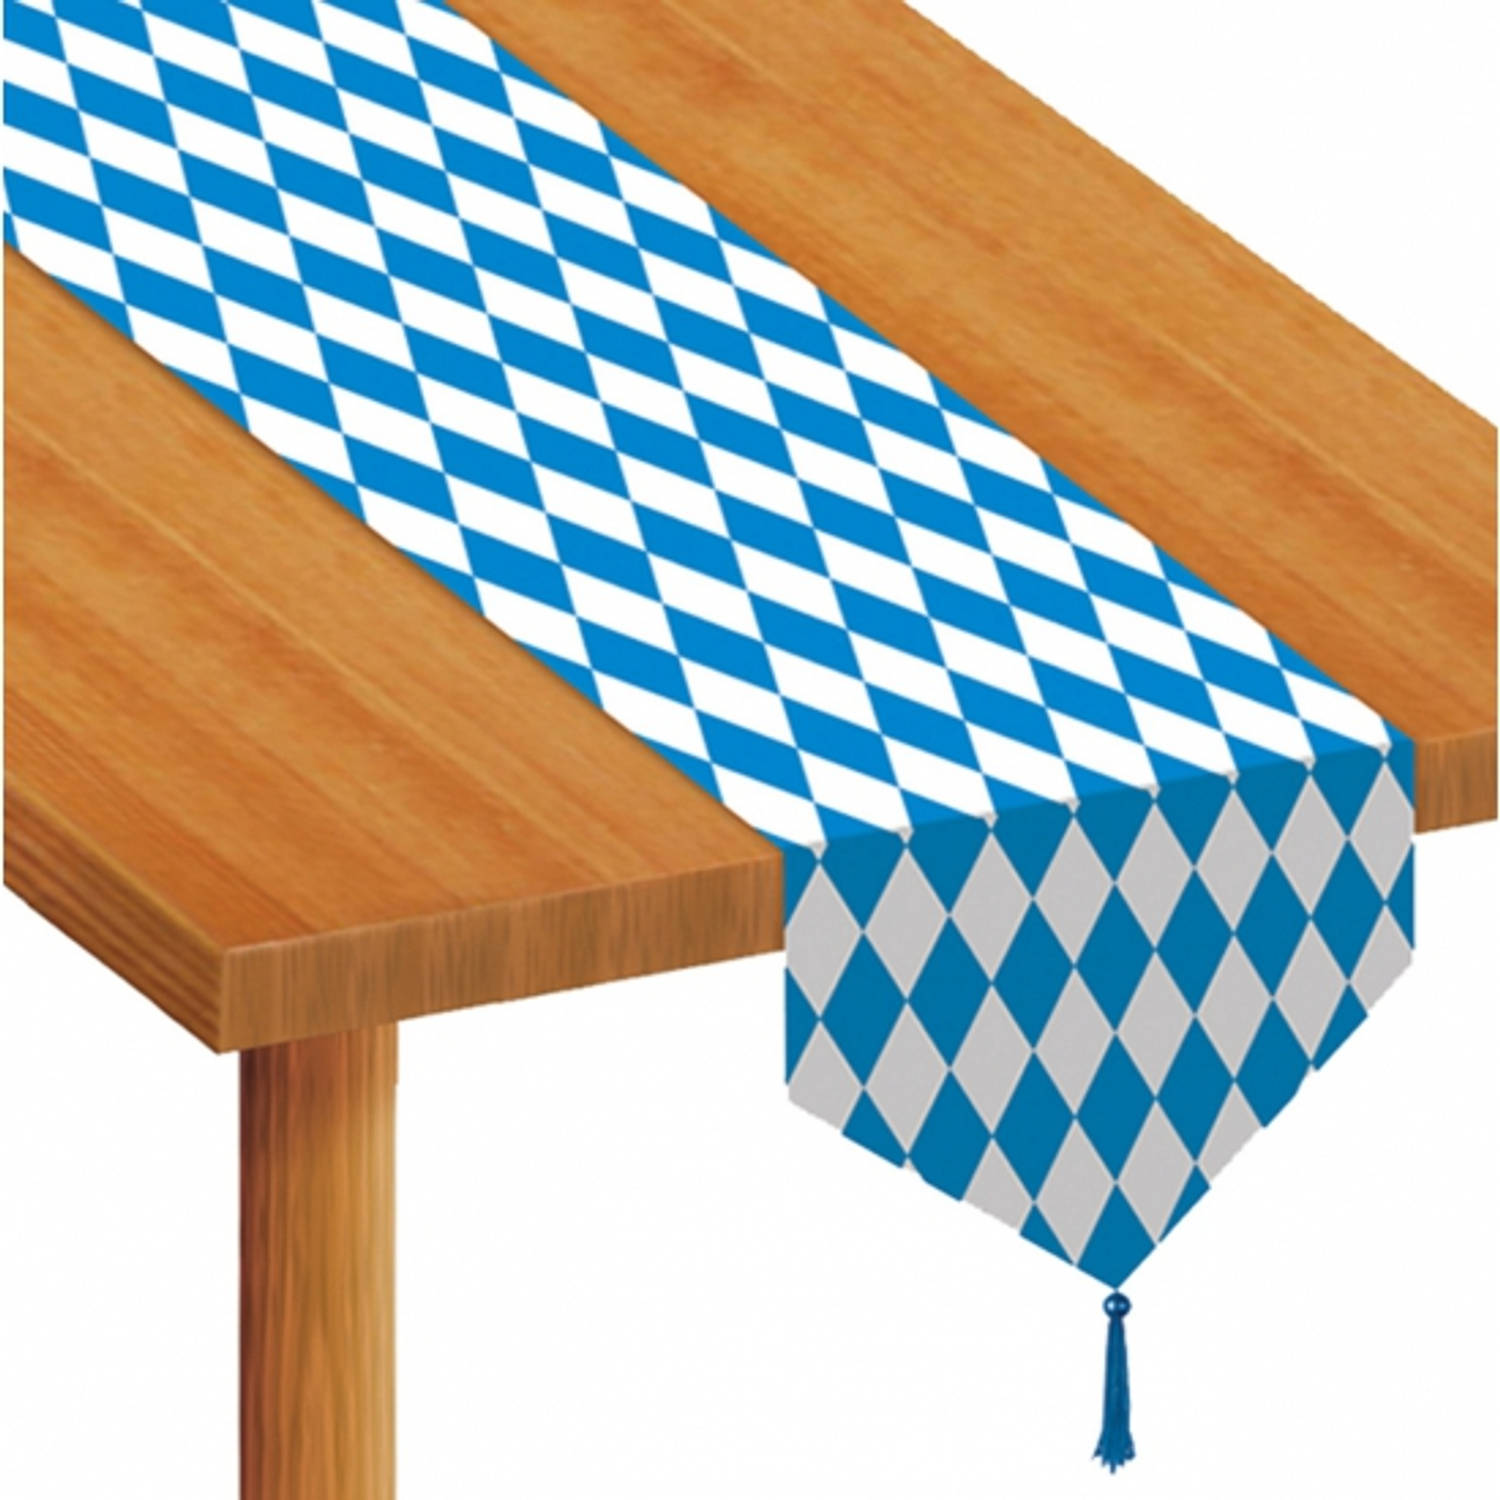 Tafeldecoratie blauw/witte tafellopers 183 cm - Feesttafelkleden